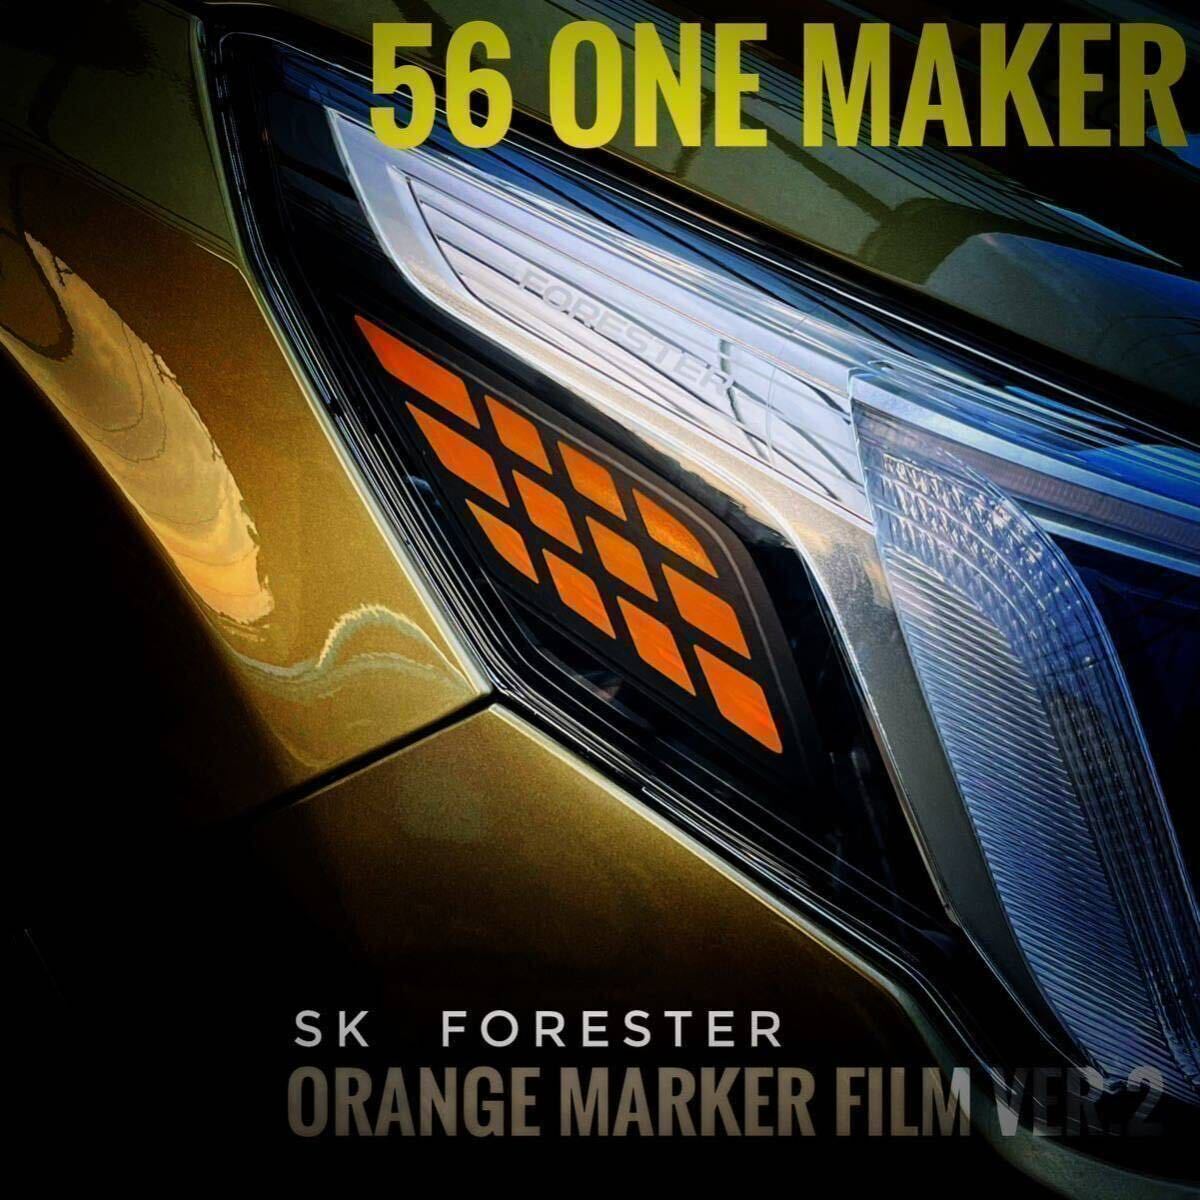 SK後期フォレスター用メッシュオレンジマーカーデカール 3Mダイノック マット黒仕様の画像2